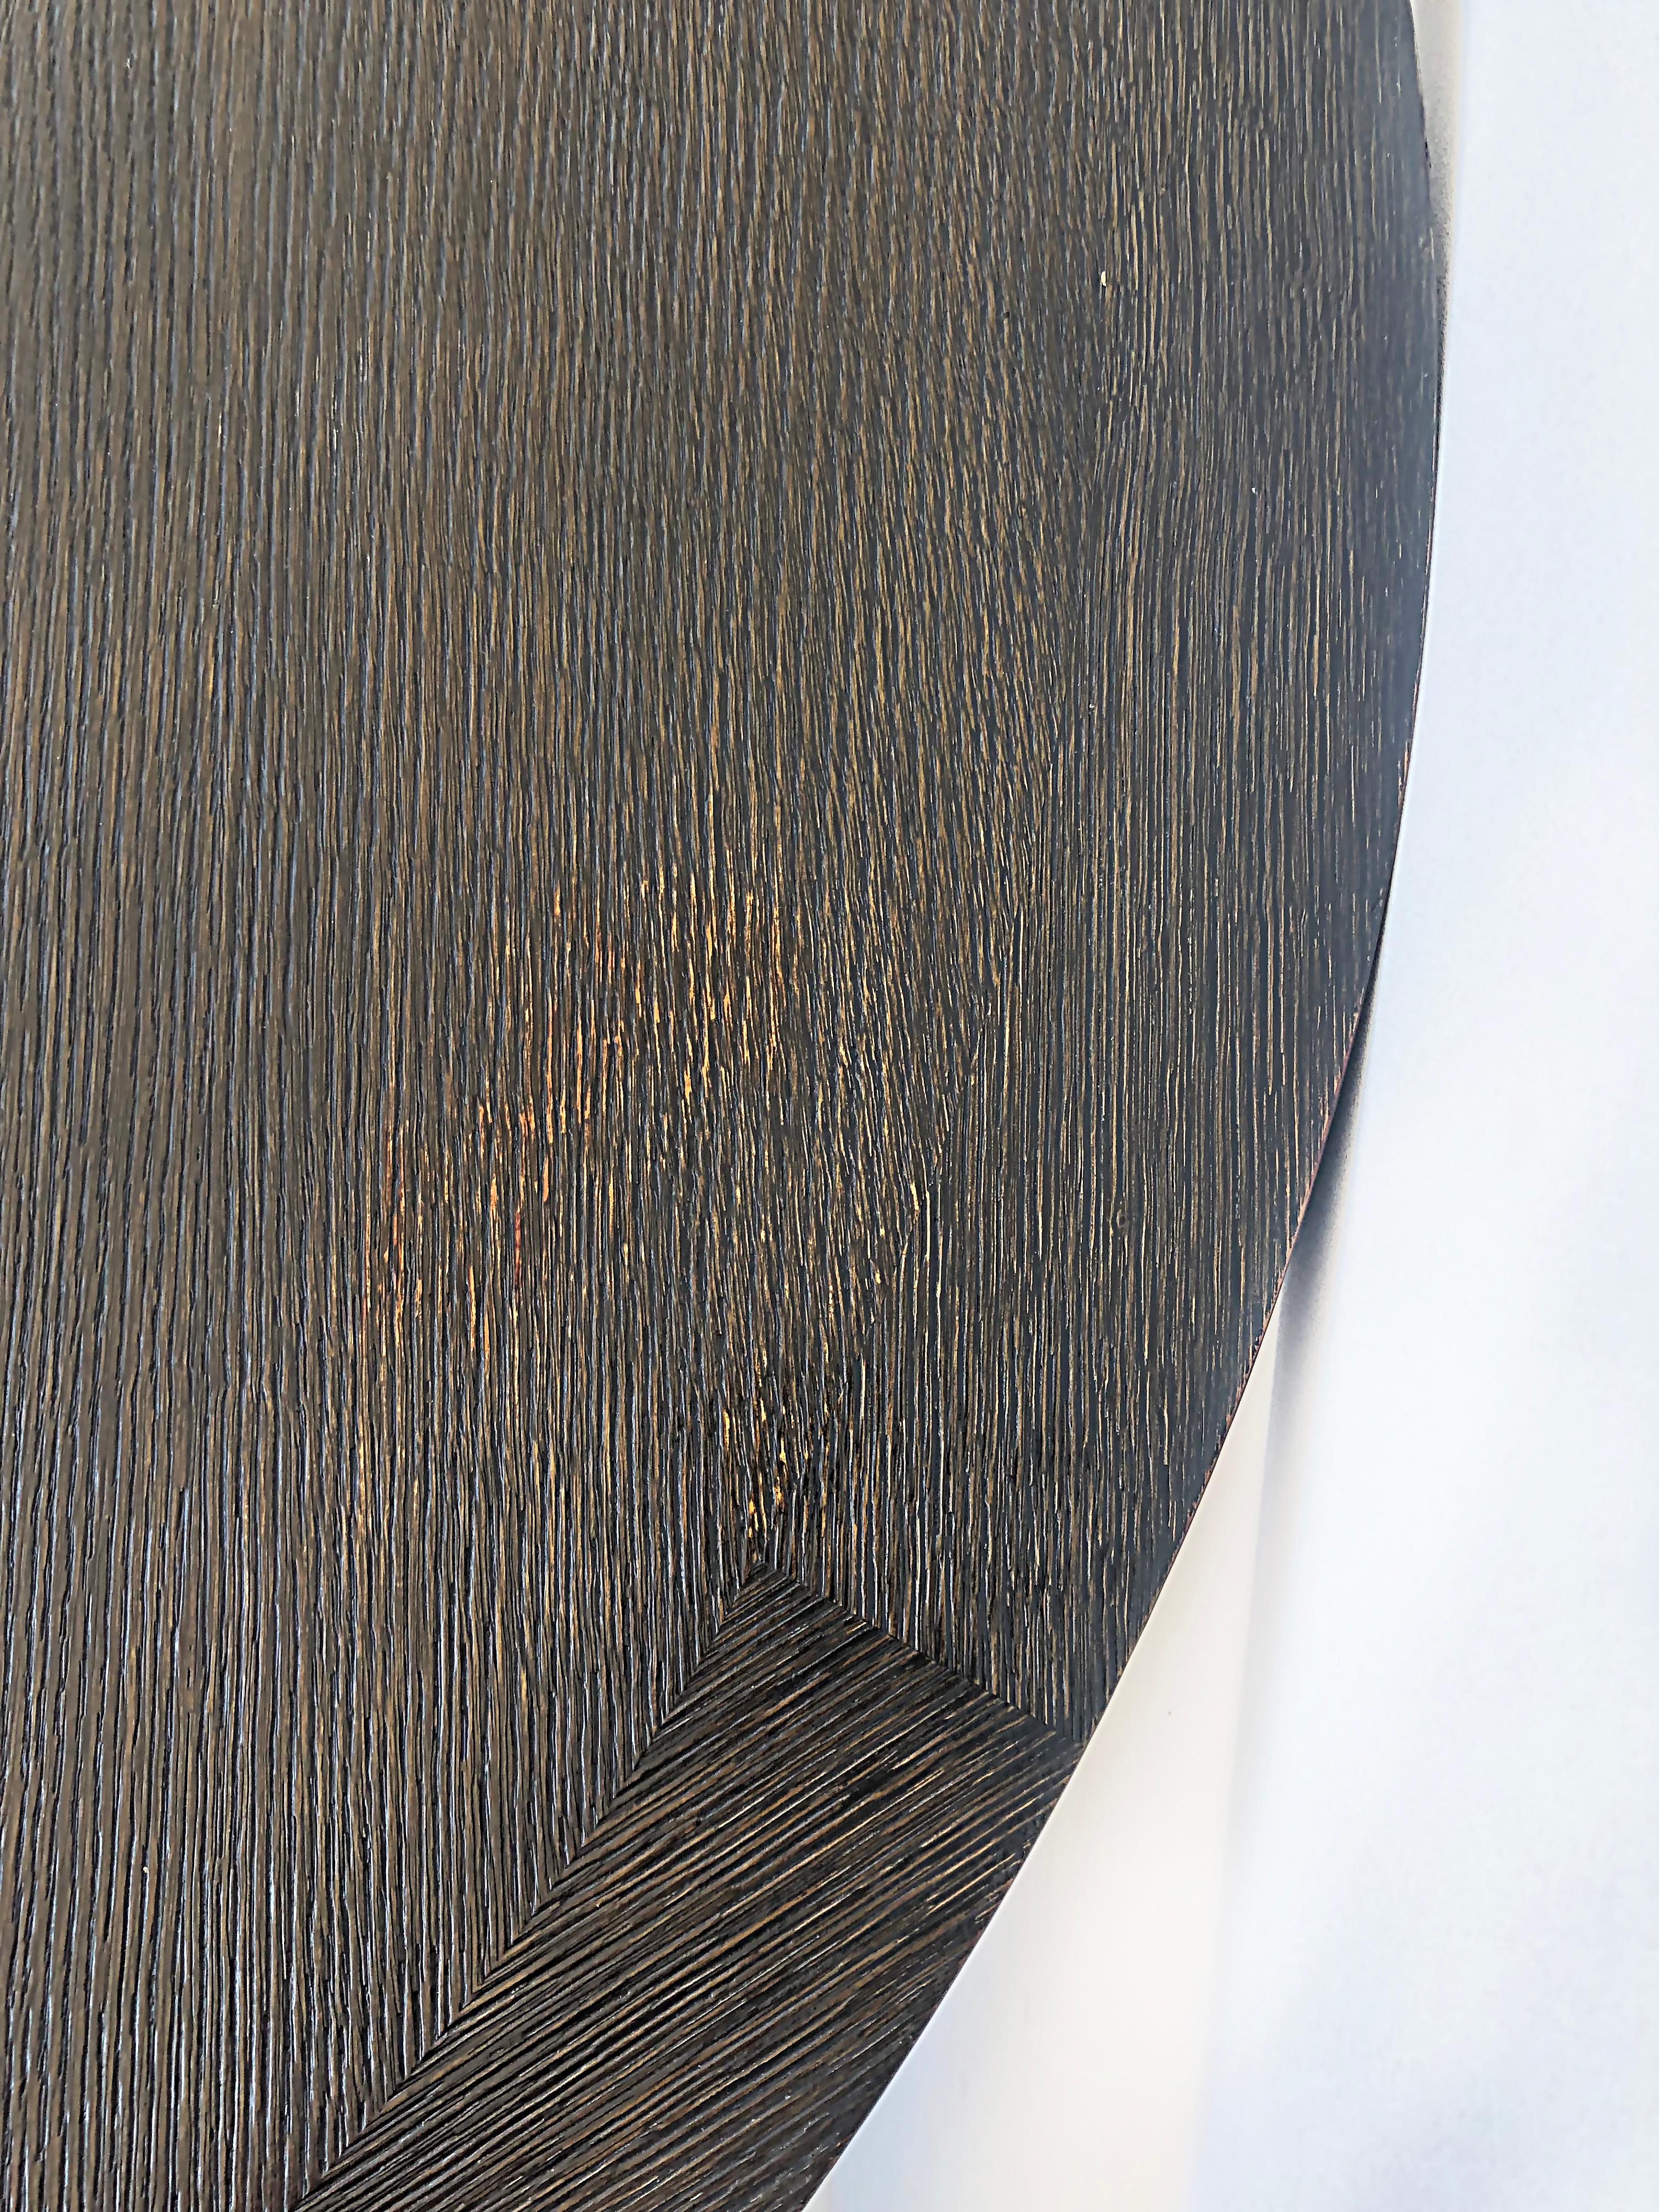 Christian Liaigre Casoar Cerused Oak Round Table, Ebonized Wire-brushed Finish 6